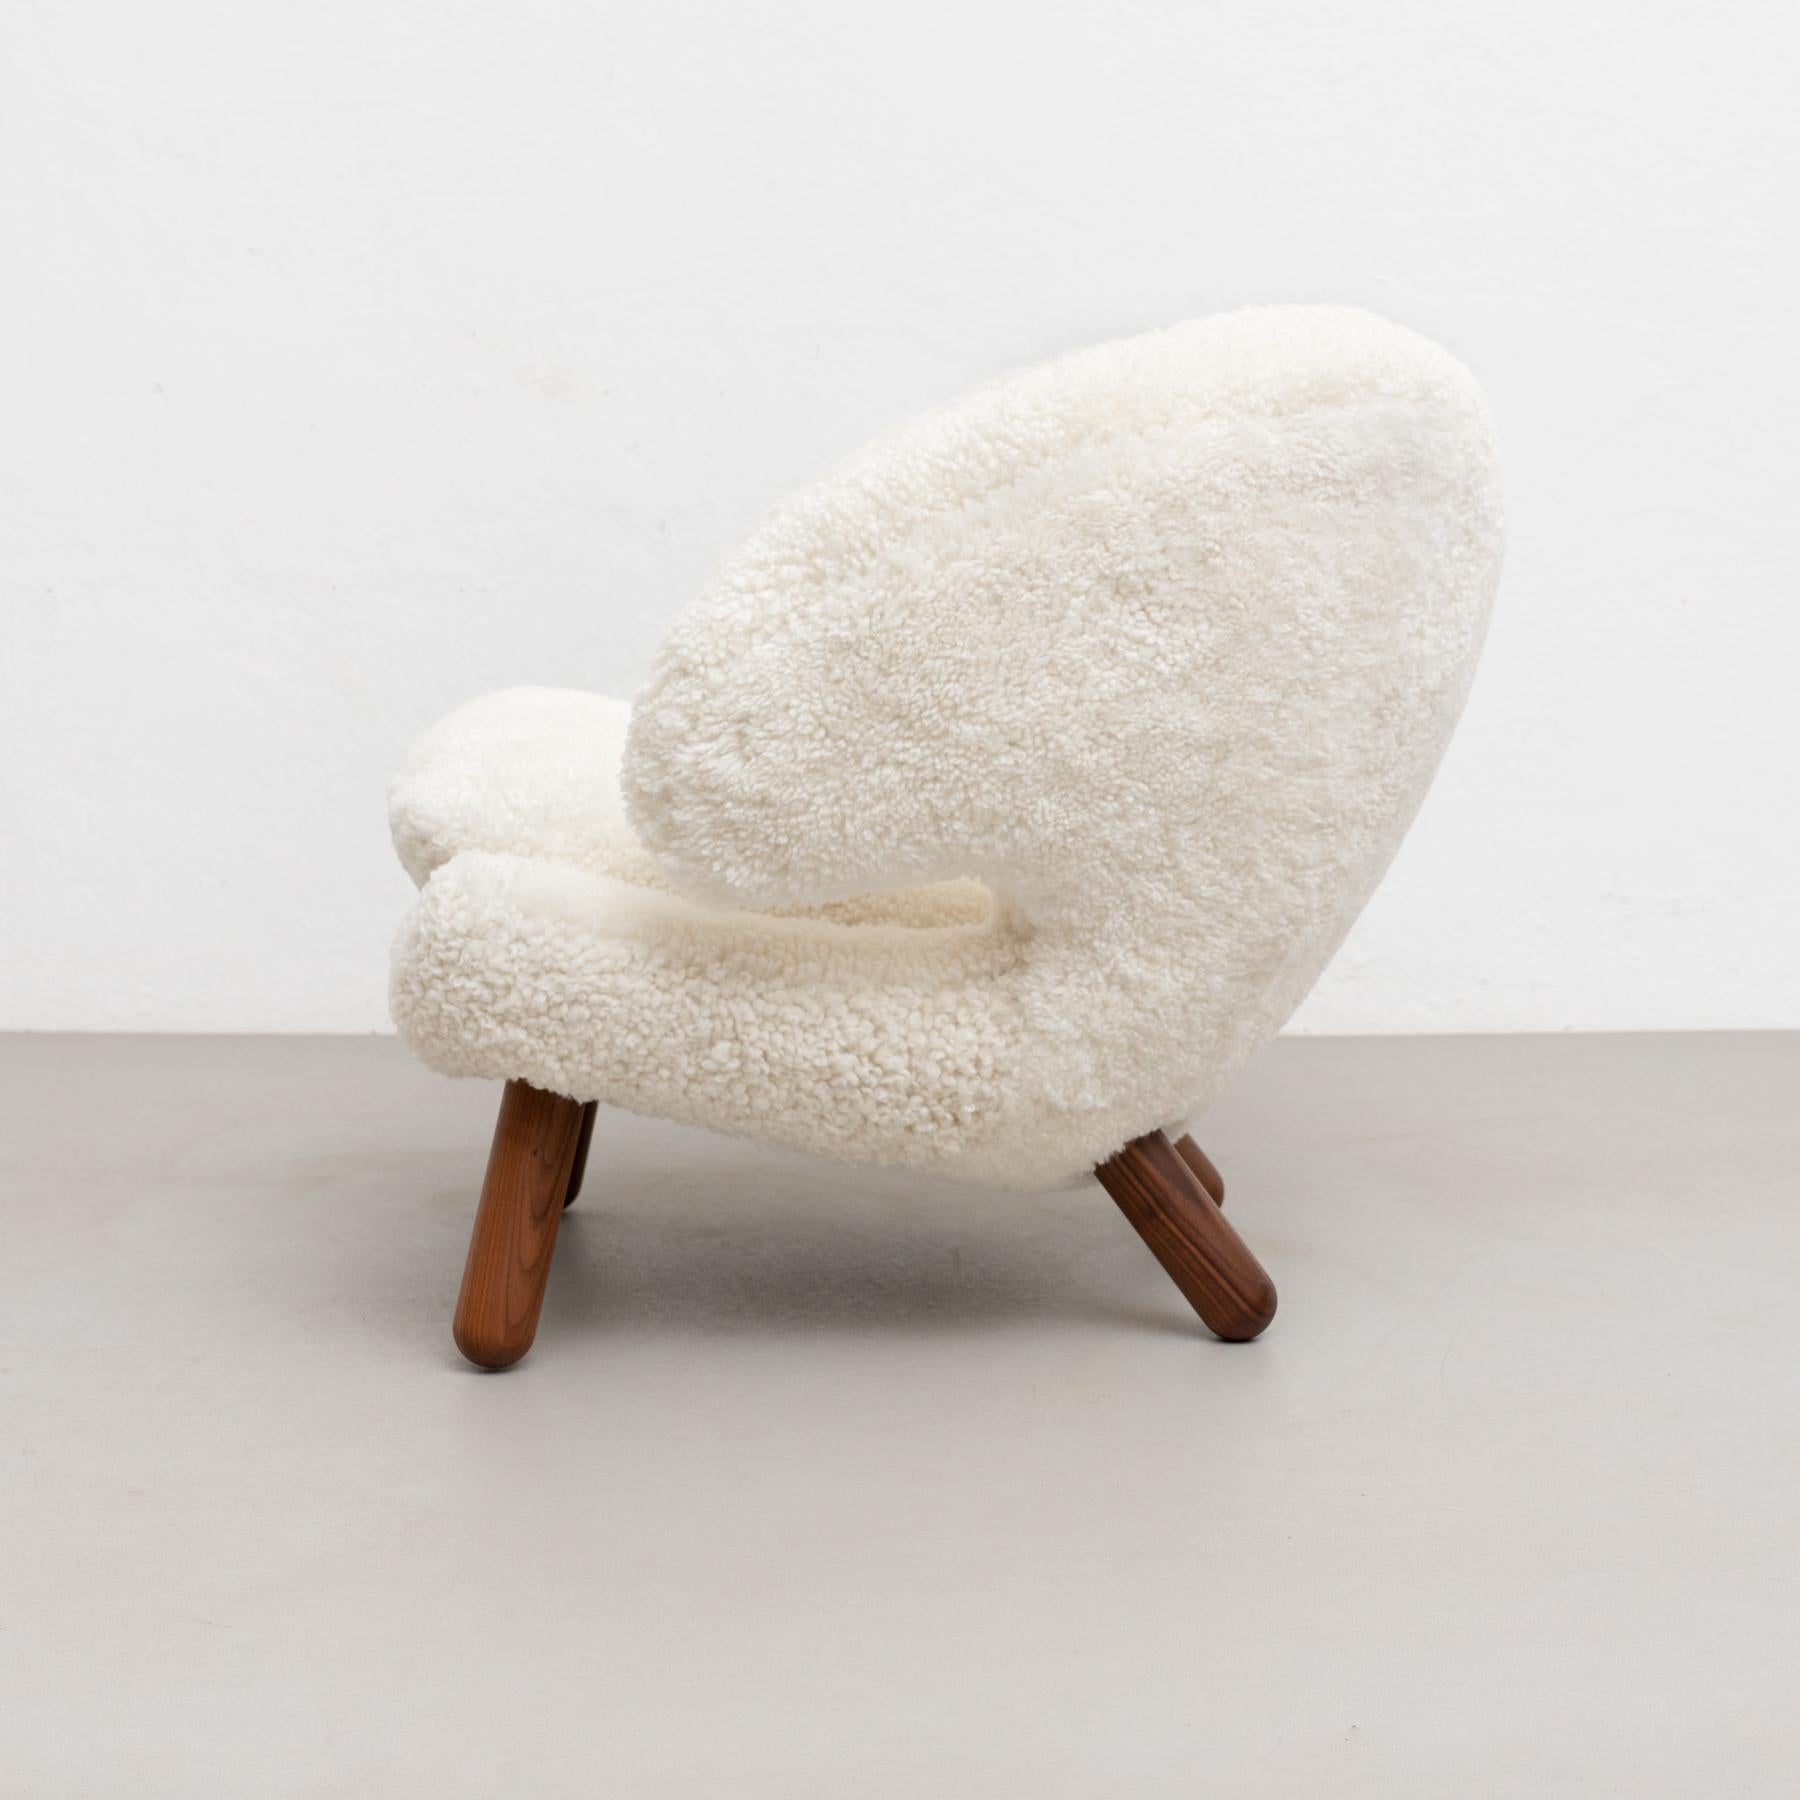 Finn Juhl Pelican Chair Upholstered in Gotland Sheepskin For Sale 9